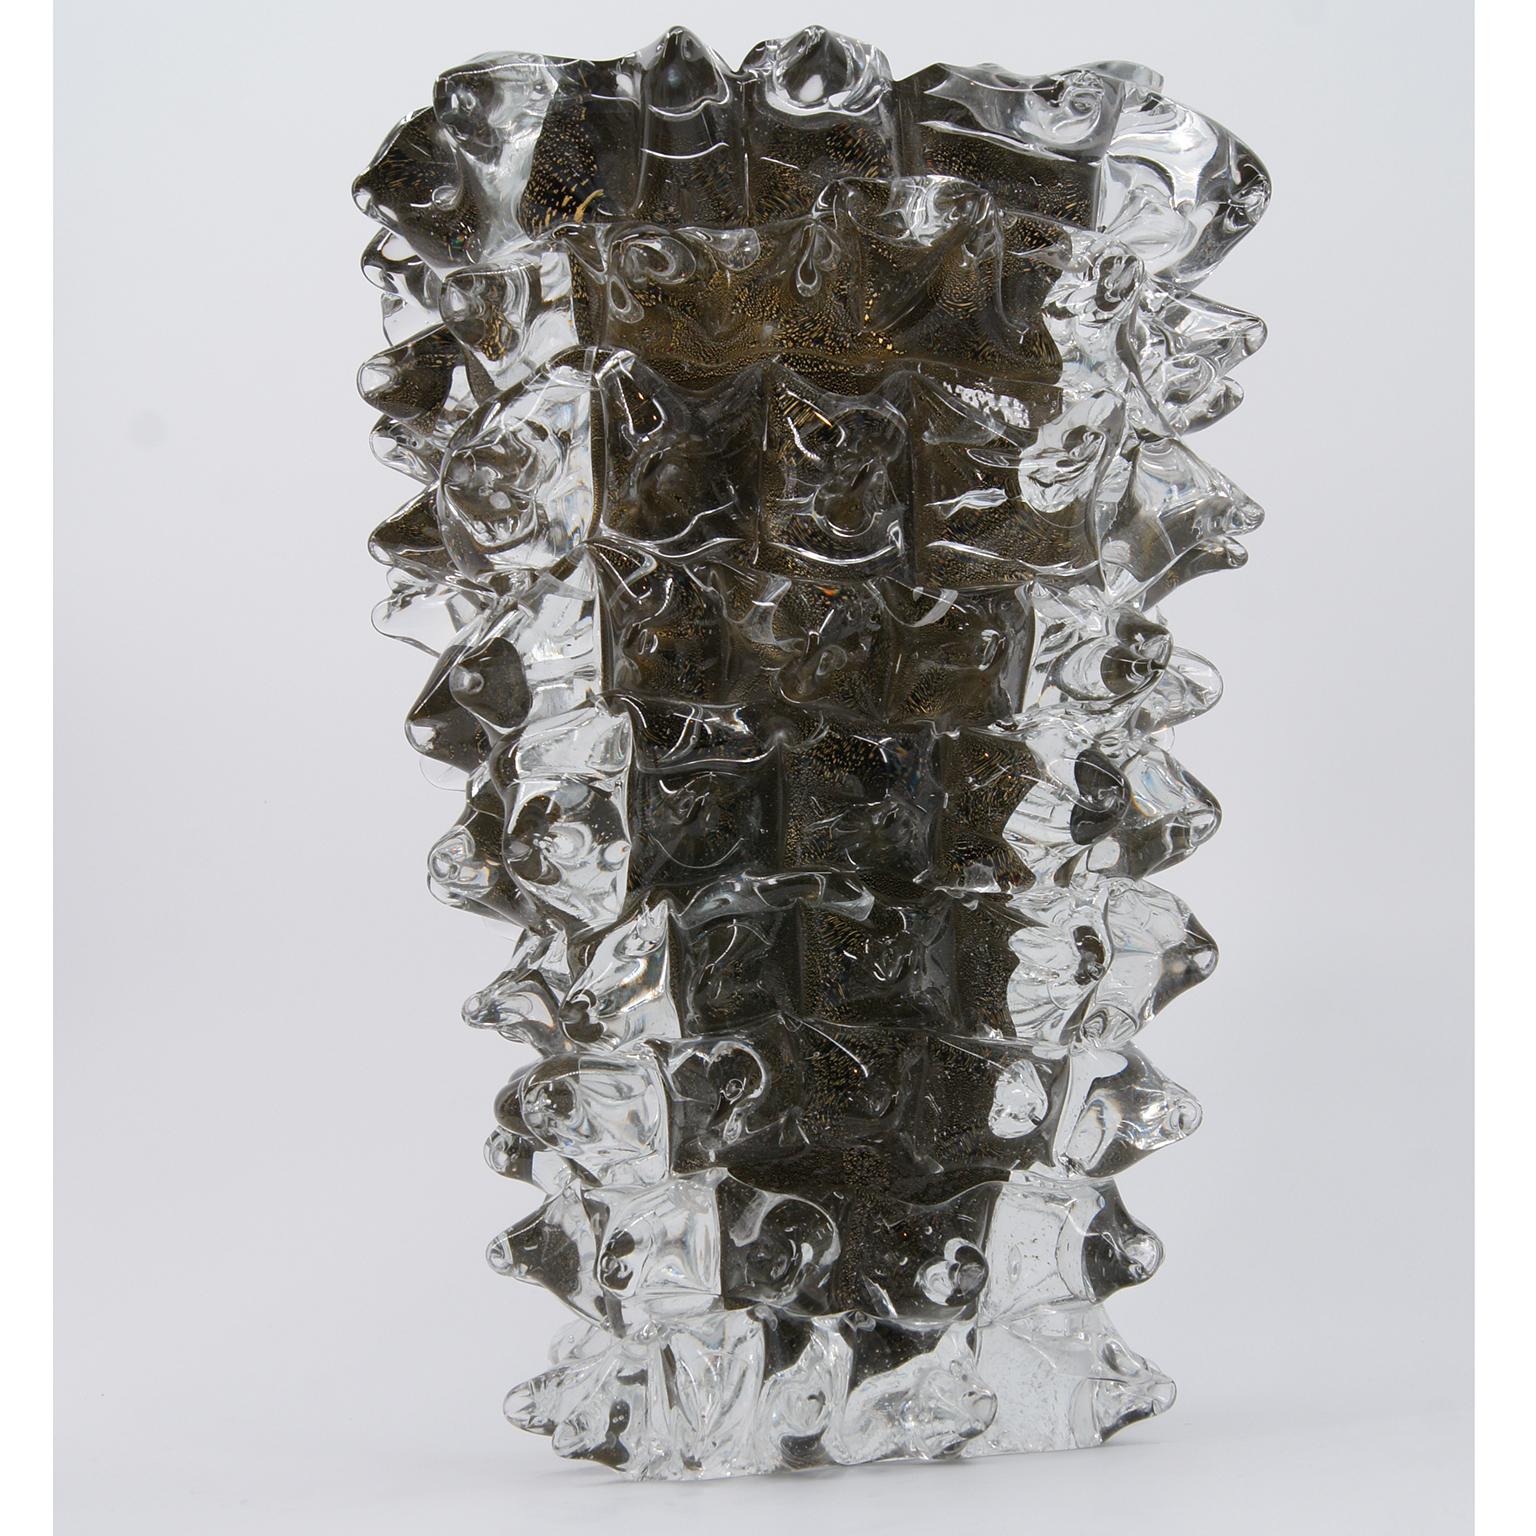 Voici un étonnant vase à l'âme dorée, méticuleusement fabriqué à la main par Roberto Beltrami et son équipe qualifiée à Murano.

Ces vases majestueux sont façonnés avant d'être ornés de pointes de verre transparent brûlant fusionnées tout autour.